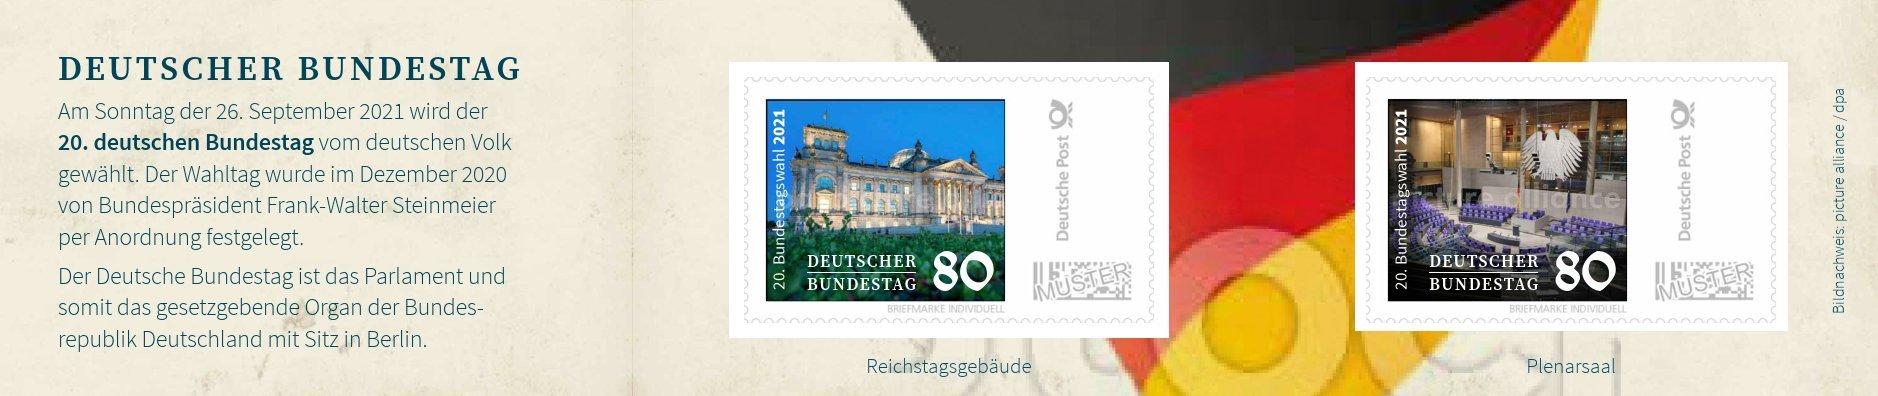 Exklusive Stamp Card zur Bundestagswahl 2021!